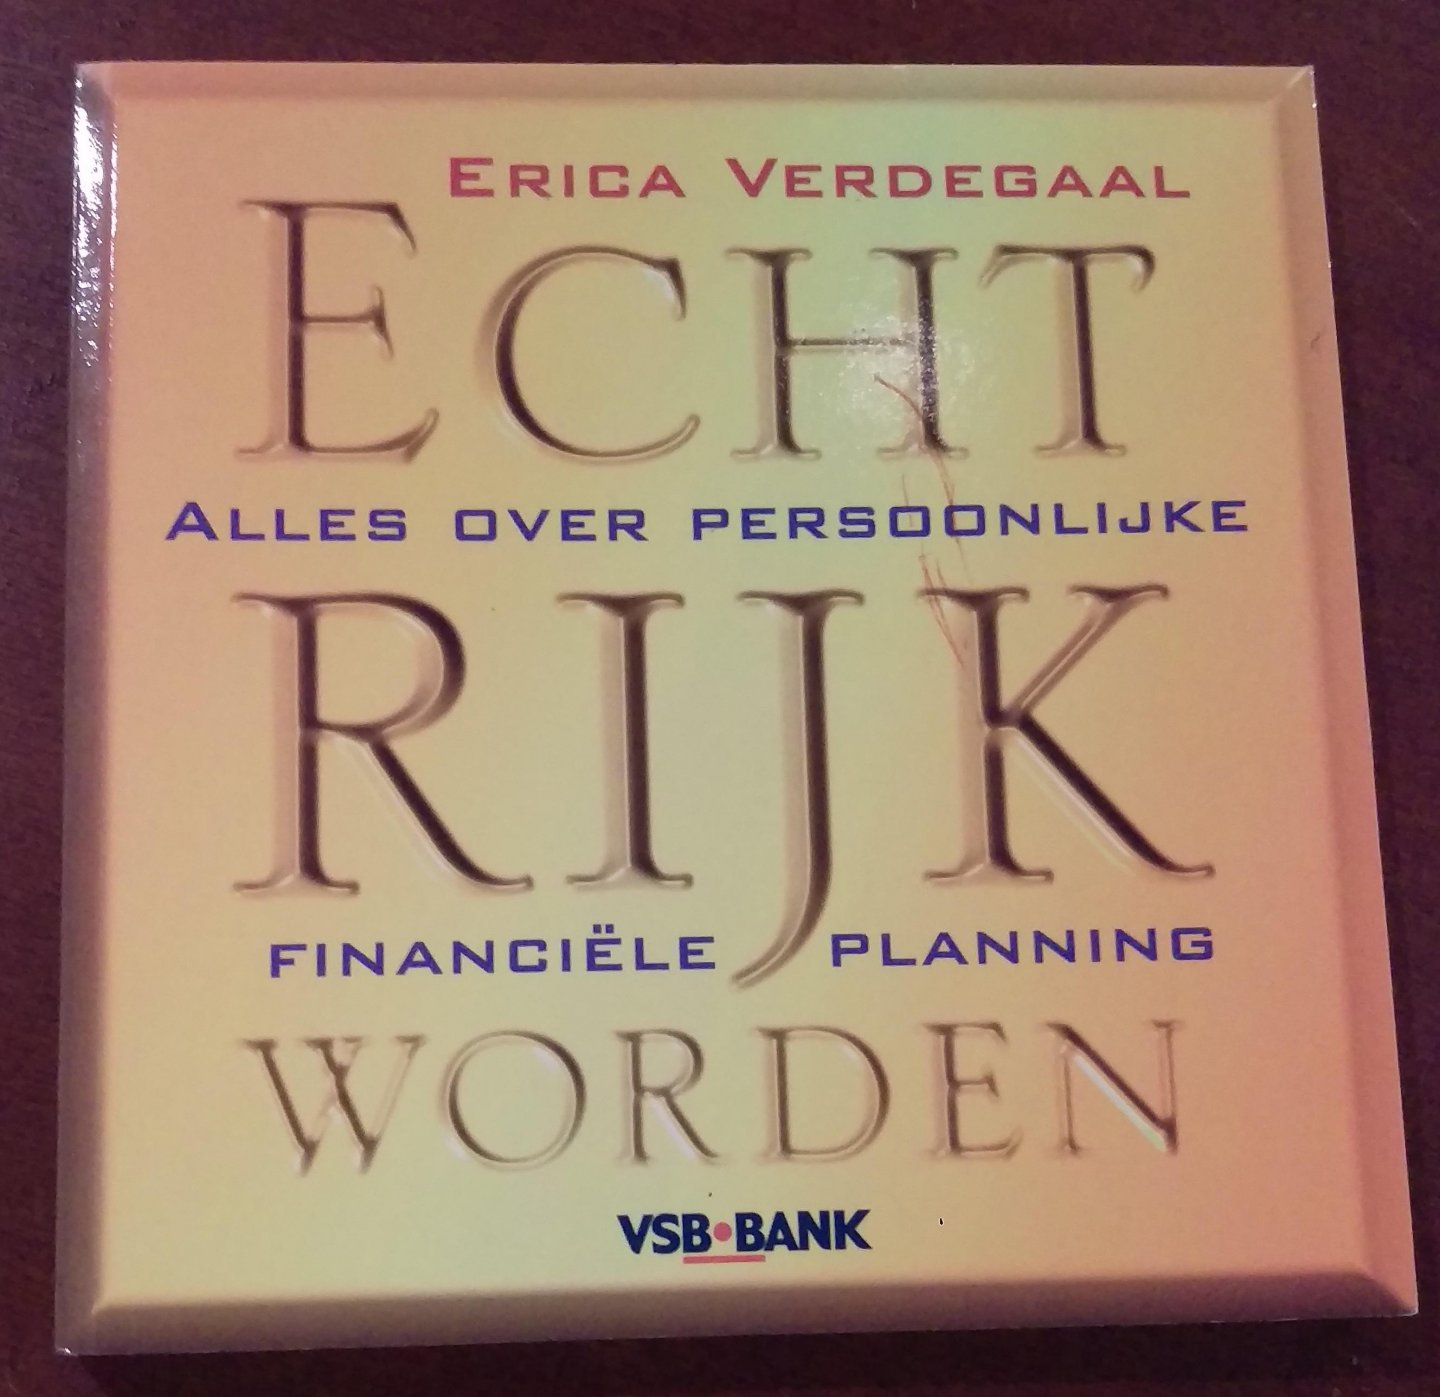 Erica Verdegaal - Echt rijk worden, alles over persoonlijke financiele planning.